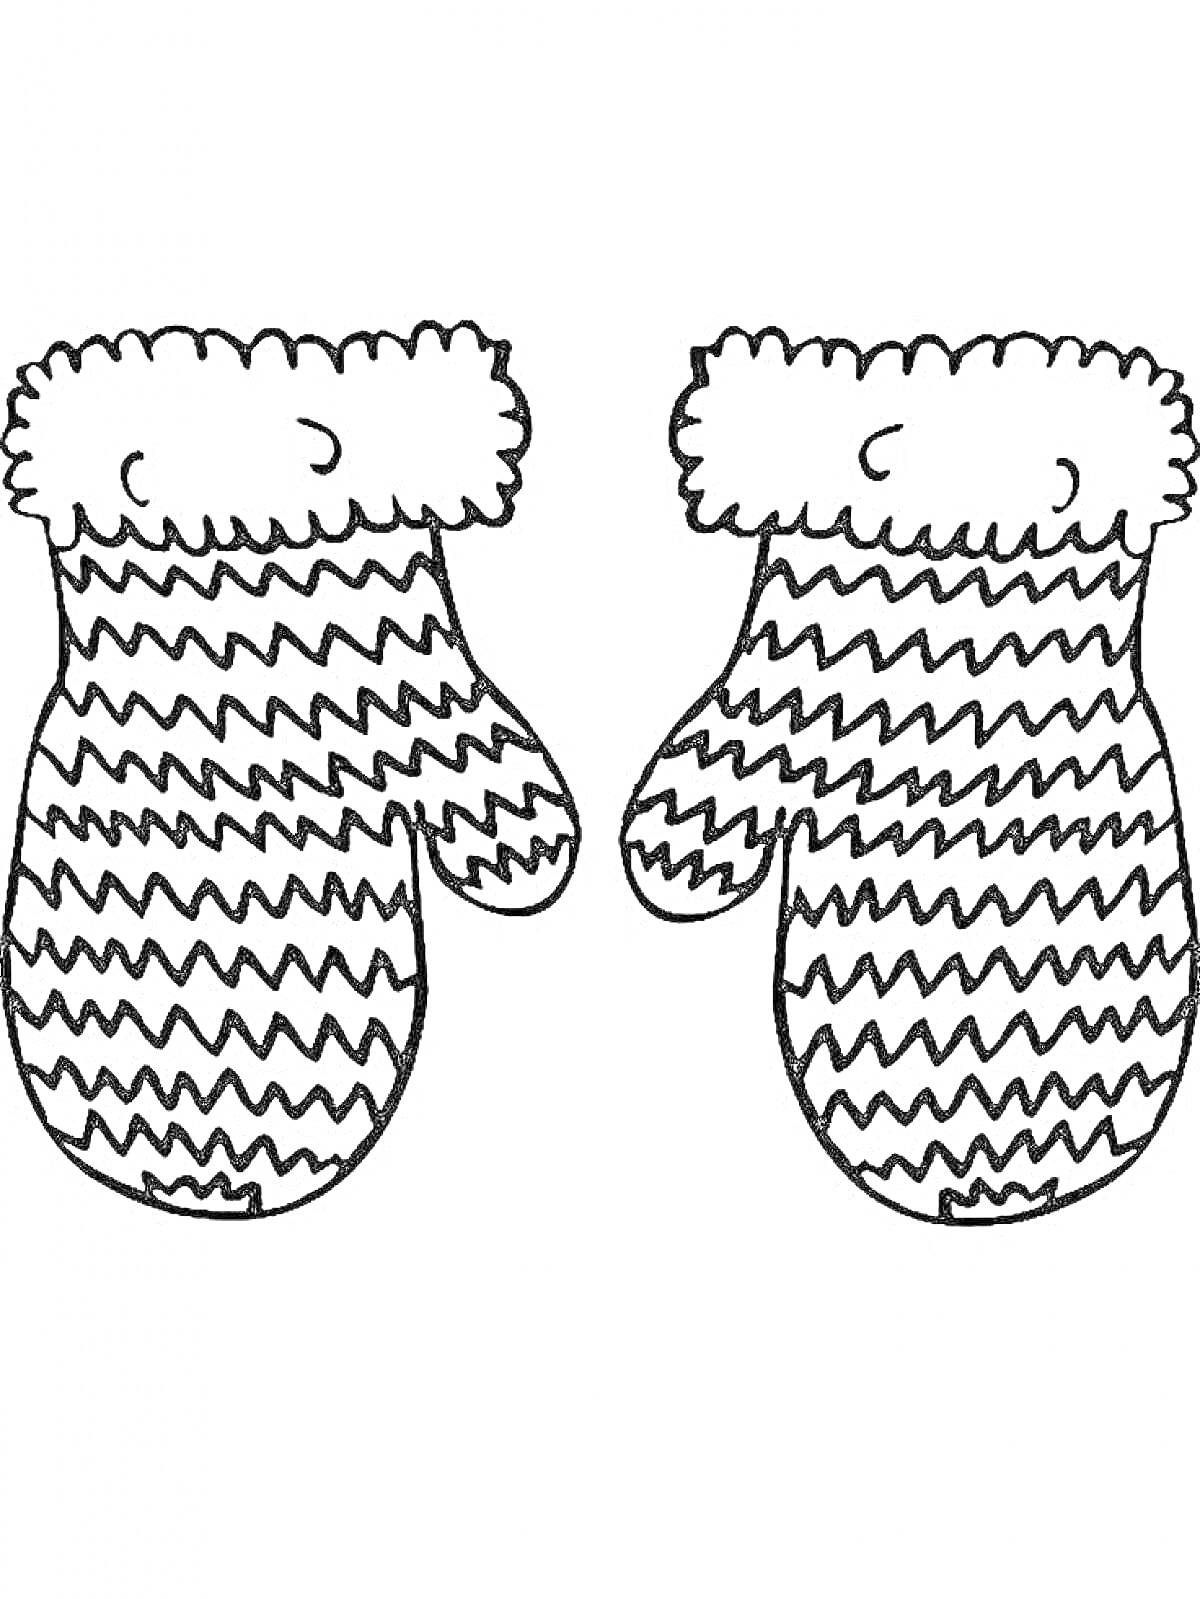 Раскраска Раскраска с изображением двух зимних рукавиц с рисунком в виде зигзагов